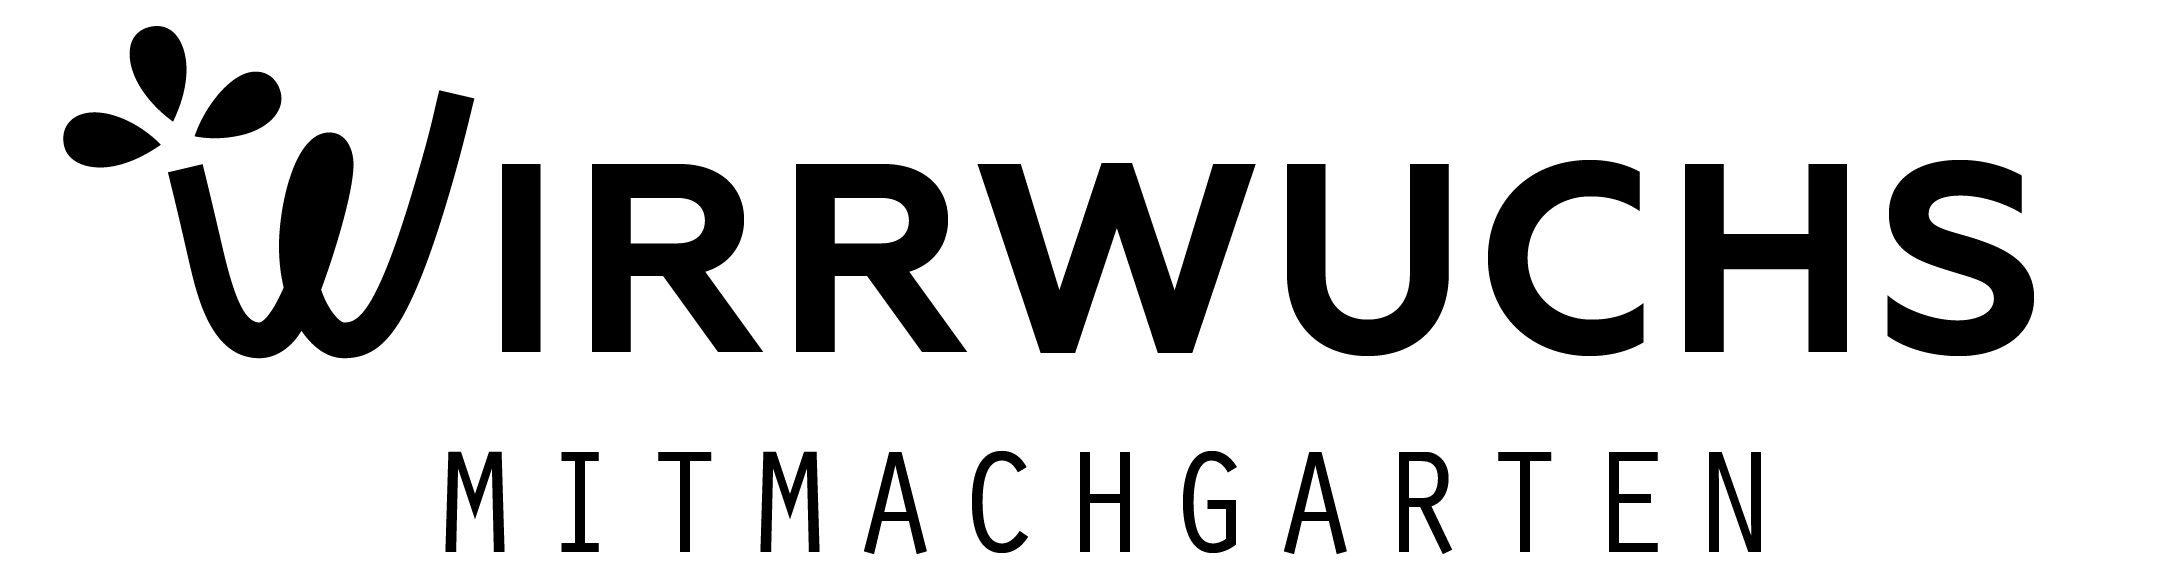 Wirrwuchs Logo - Schriftzug